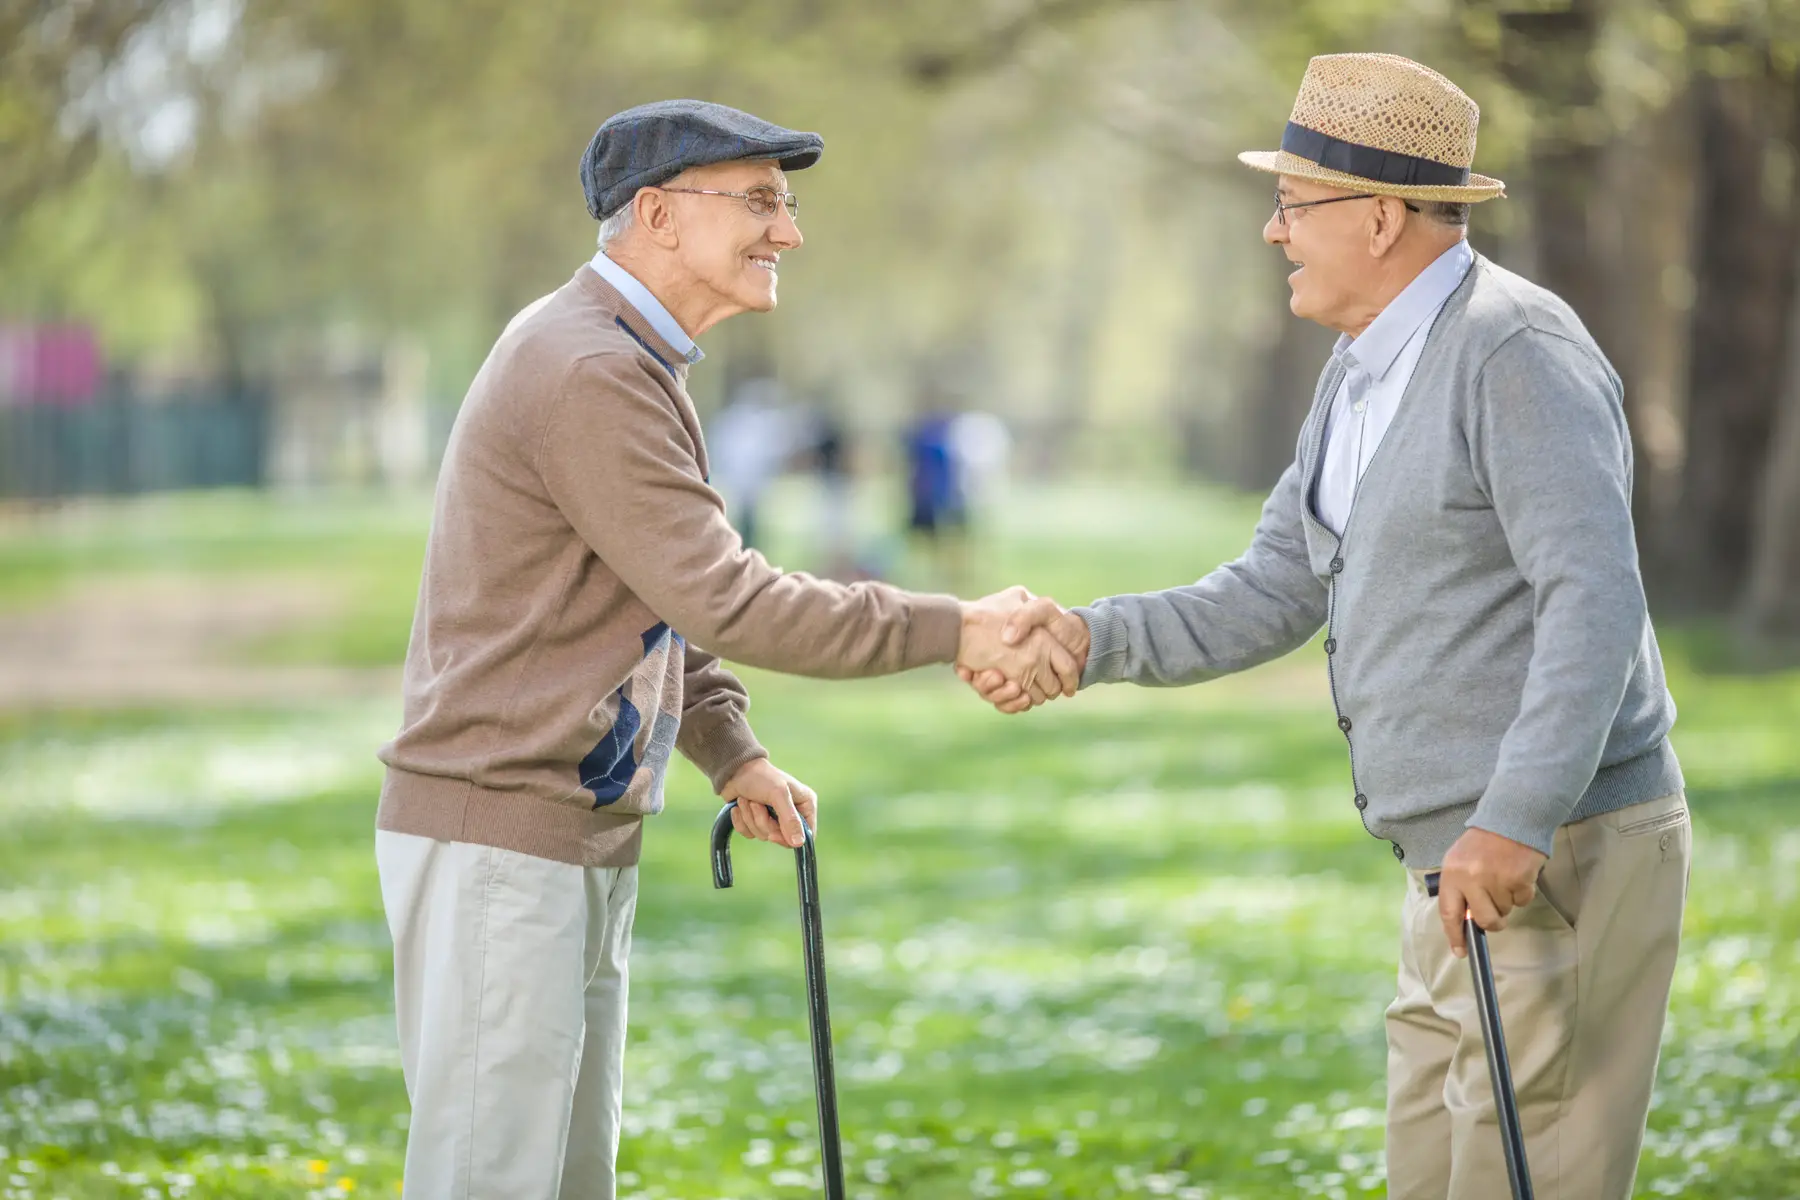 Elderly men shaking hands